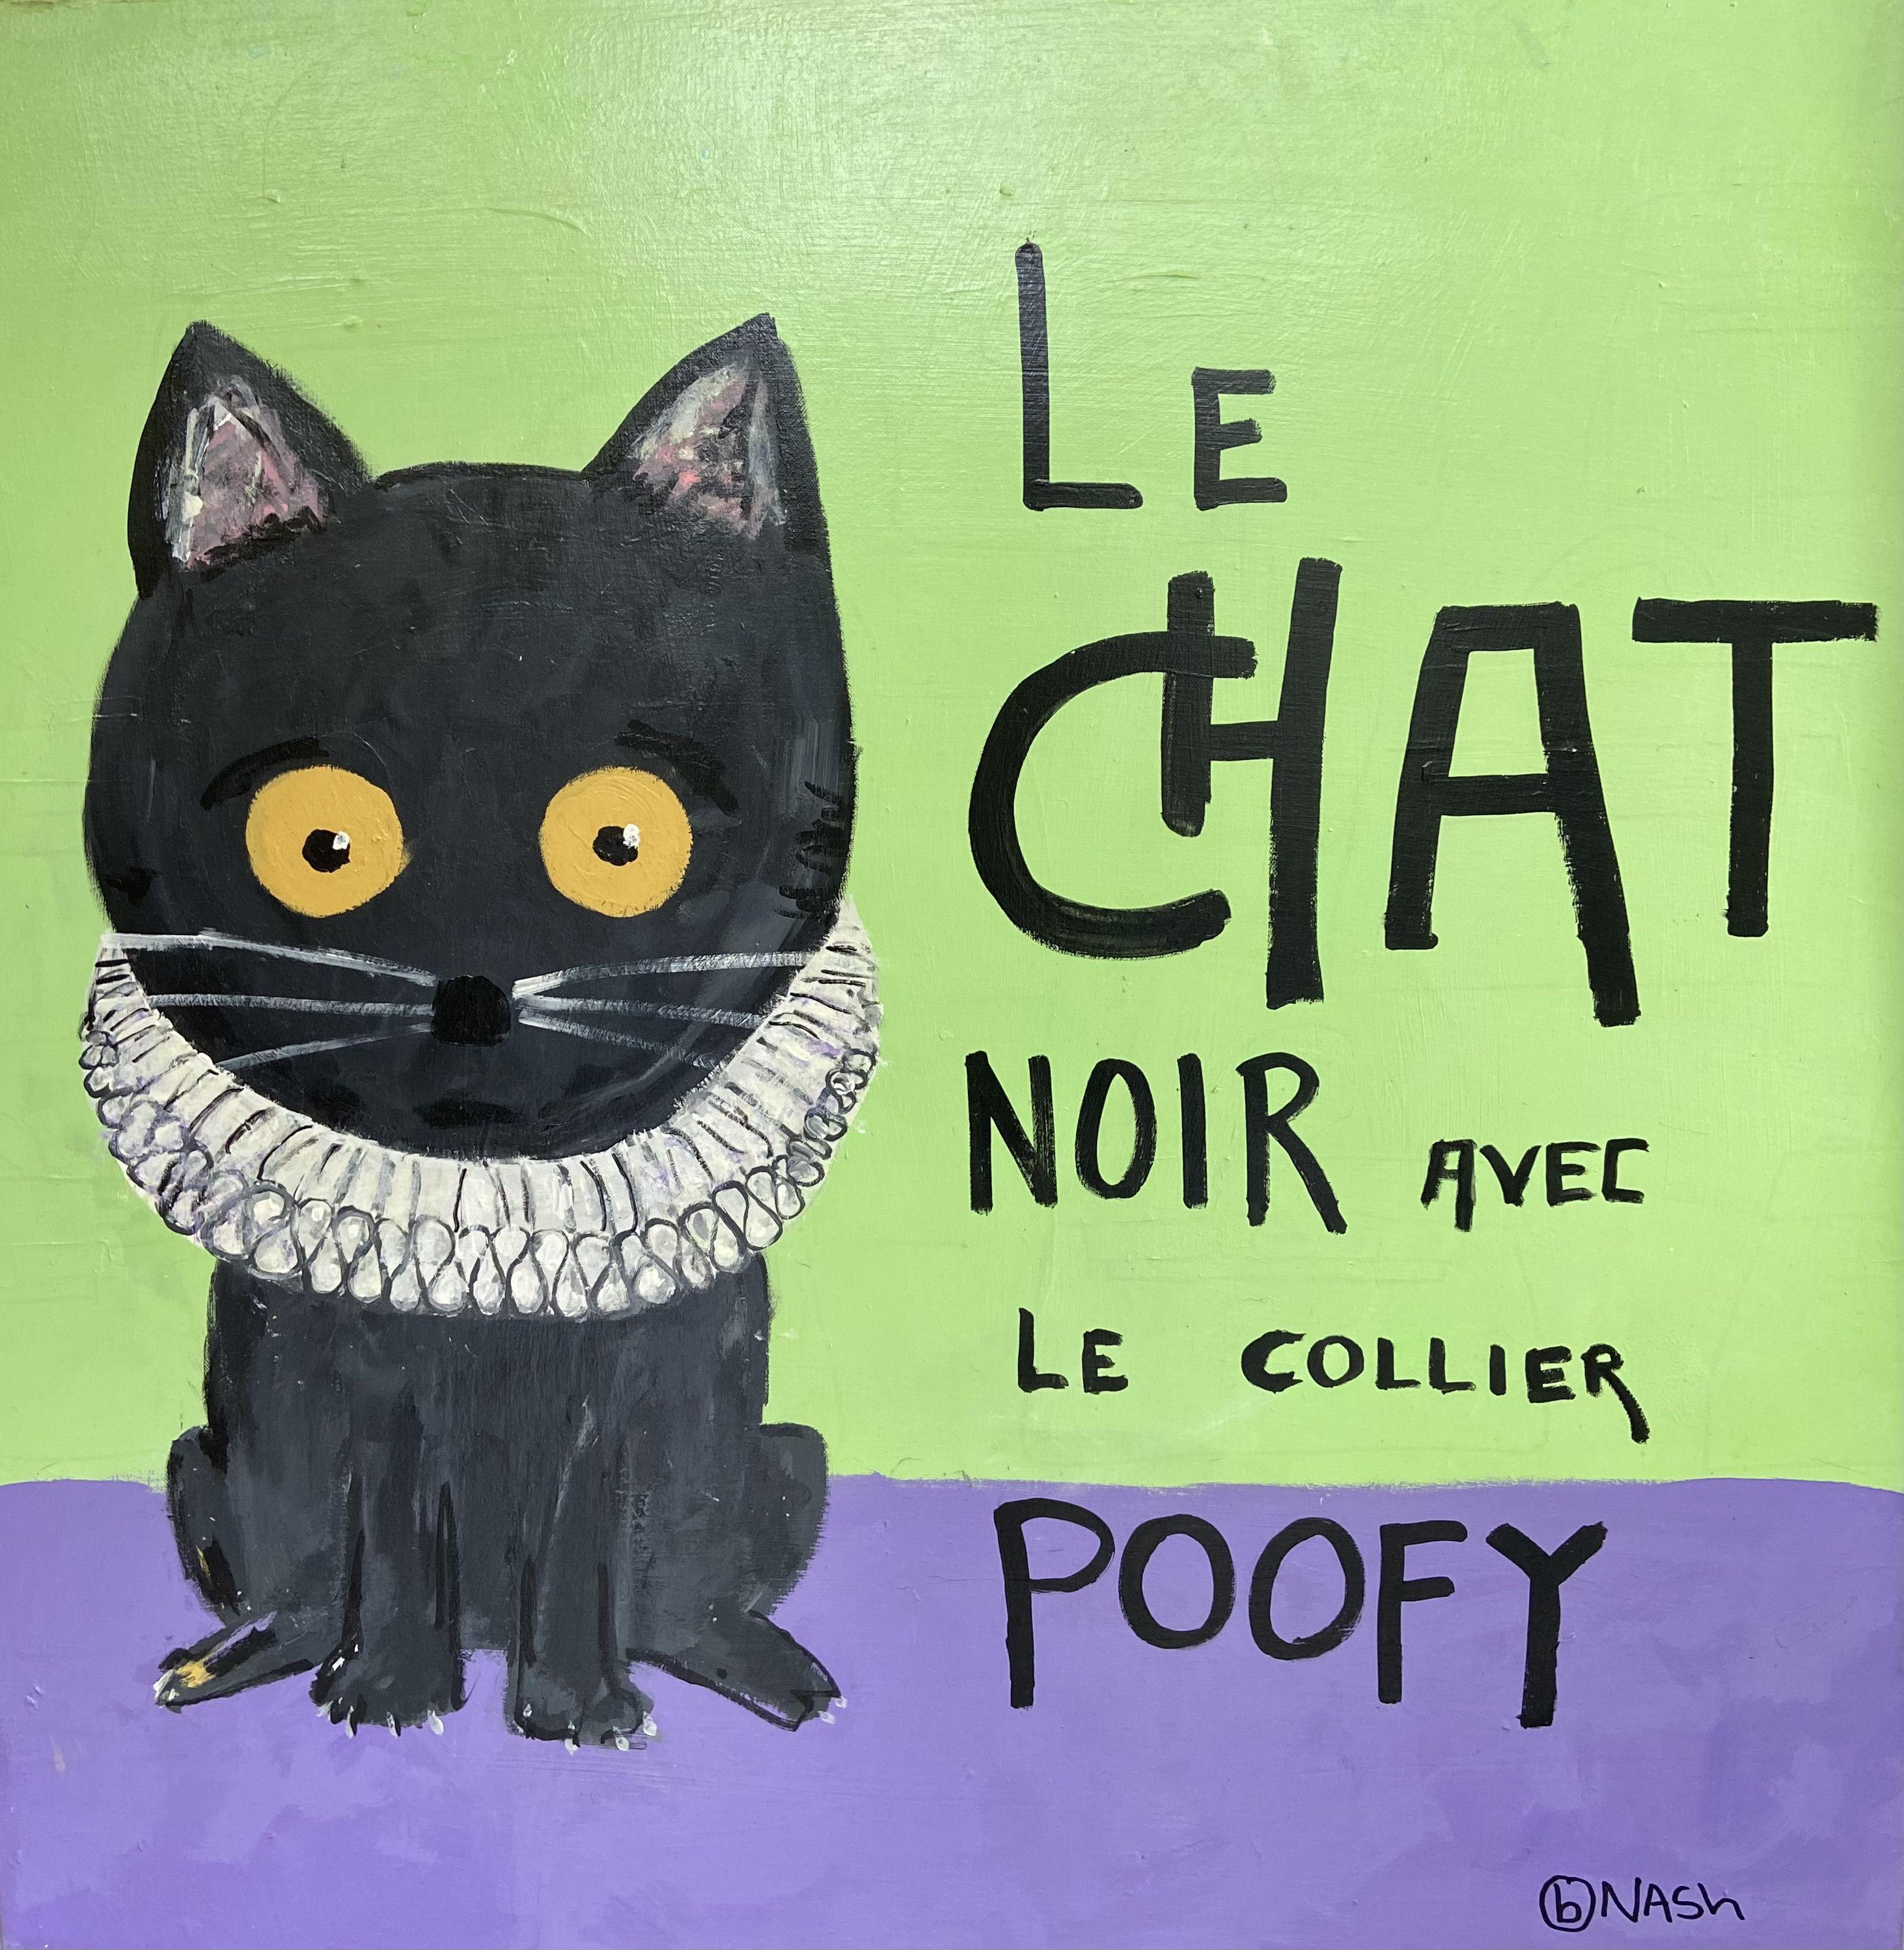 Animal Painting Brian Nash - « Le Chat Noir avec le Collier Poofy », peinture, acrylique sur toile